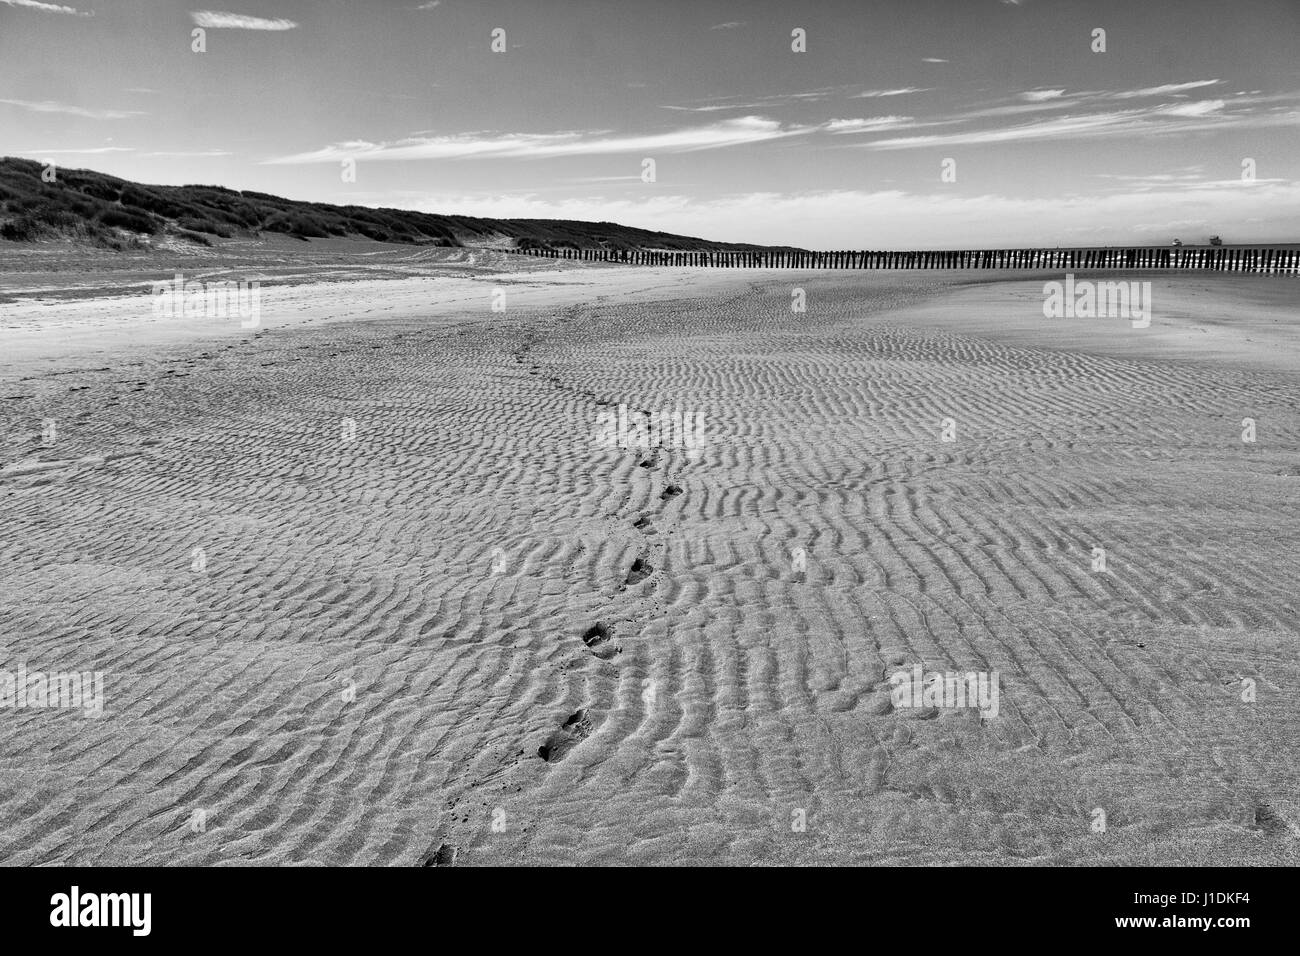 Eine einzelne Textzeile Fußspuren führen über den nassen, wellige Sand von Bleriot-Plage, bei Ebbe. Ein schwarz-weiß Bild genommen an Sangatte, Frankreich Stockfoto